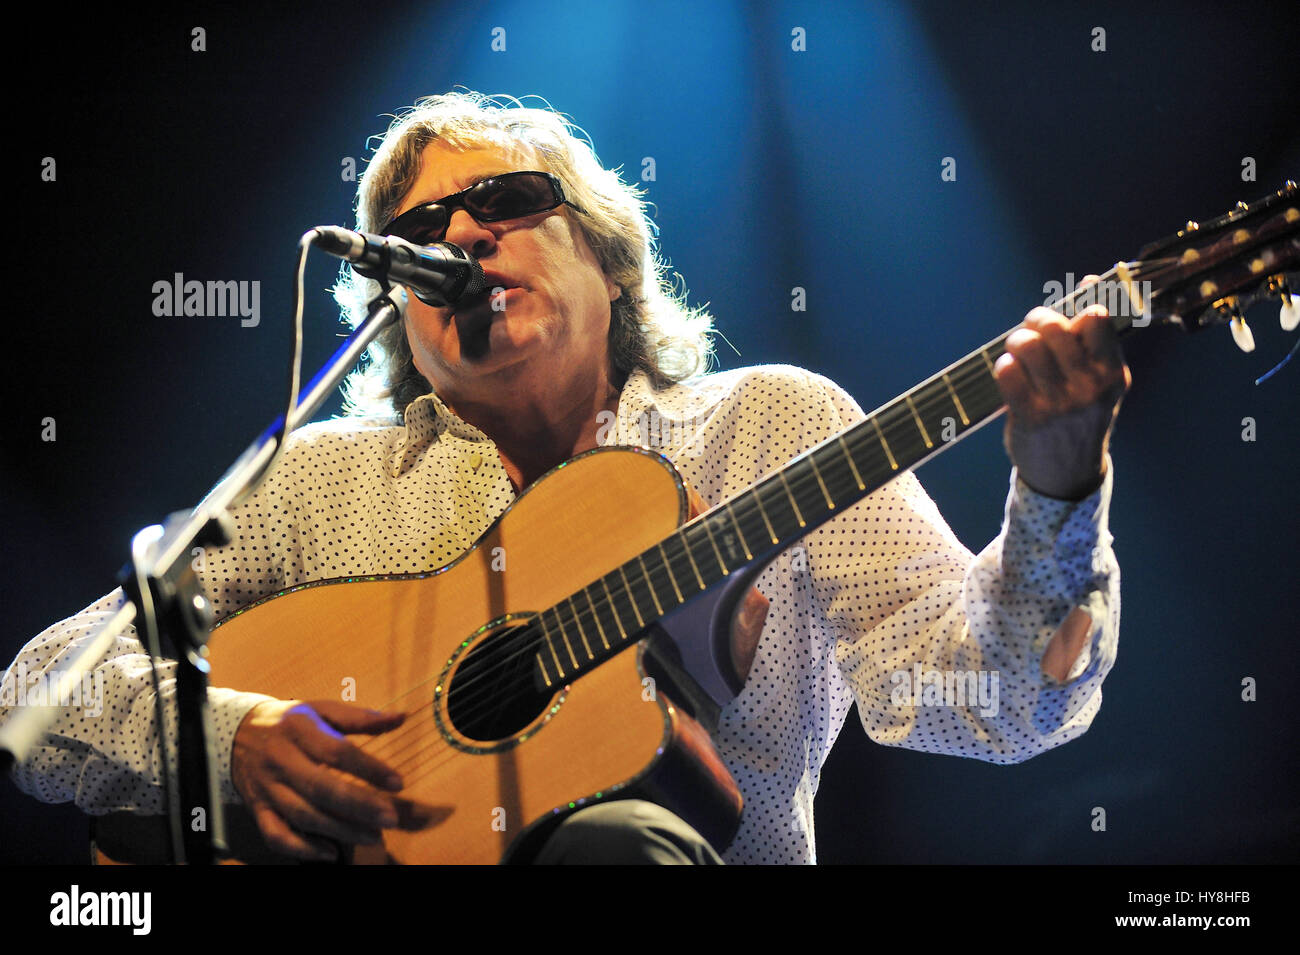 José Feliciano, José Feliciano (né en 10 septembre 1945) est un guitariste virtuose portoricain, chanteur, photo Kazimierz Jurewicz Banque D'Images